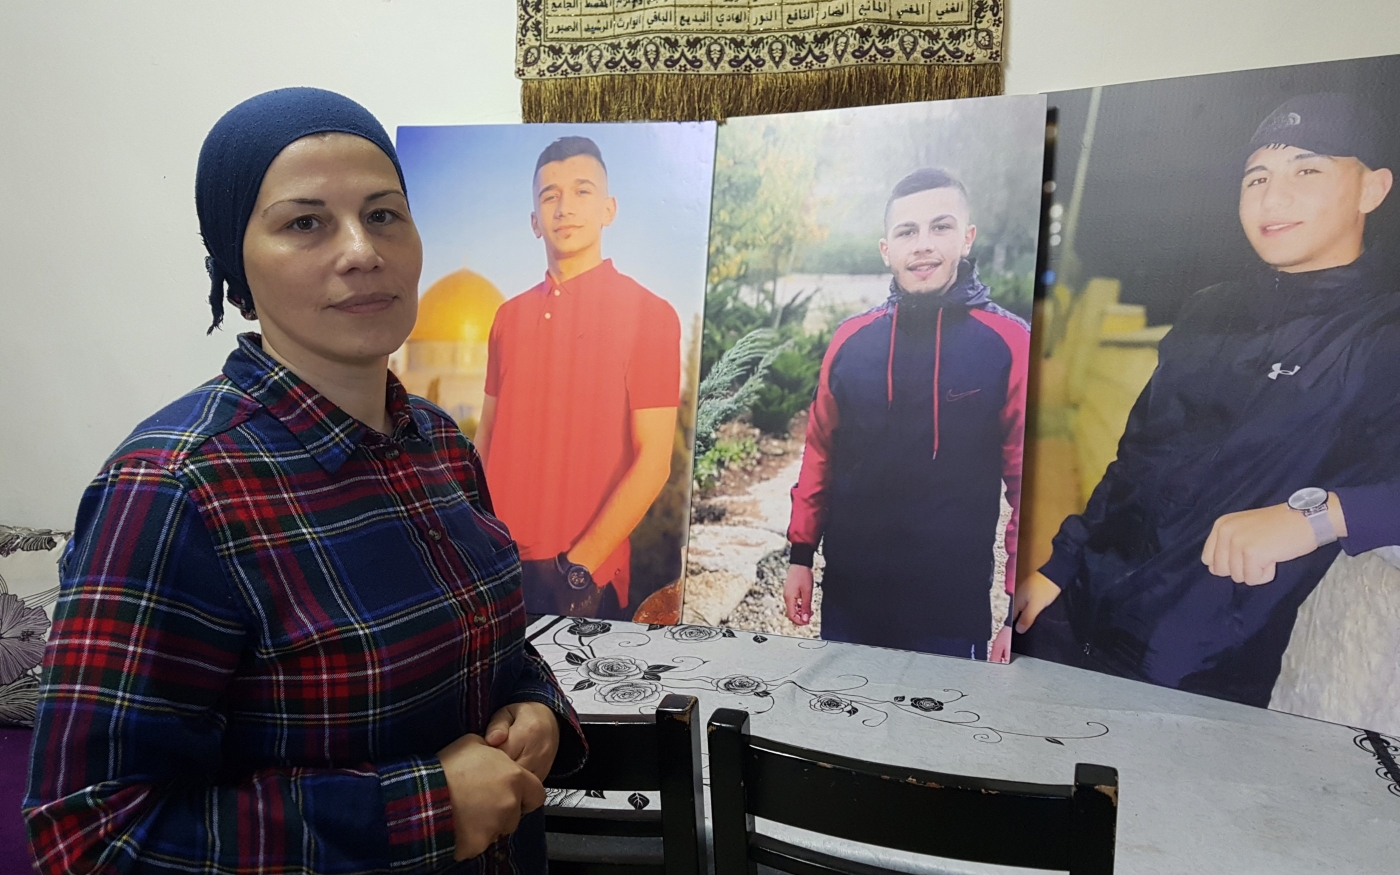 Binar Bashiti espère une vie tranquille, dans laquelle les autorités israéliennes n’en auraient pas après ses enfants au moindre signe d’agitation dans la vieille ville (MEE/Aseel Jundi)